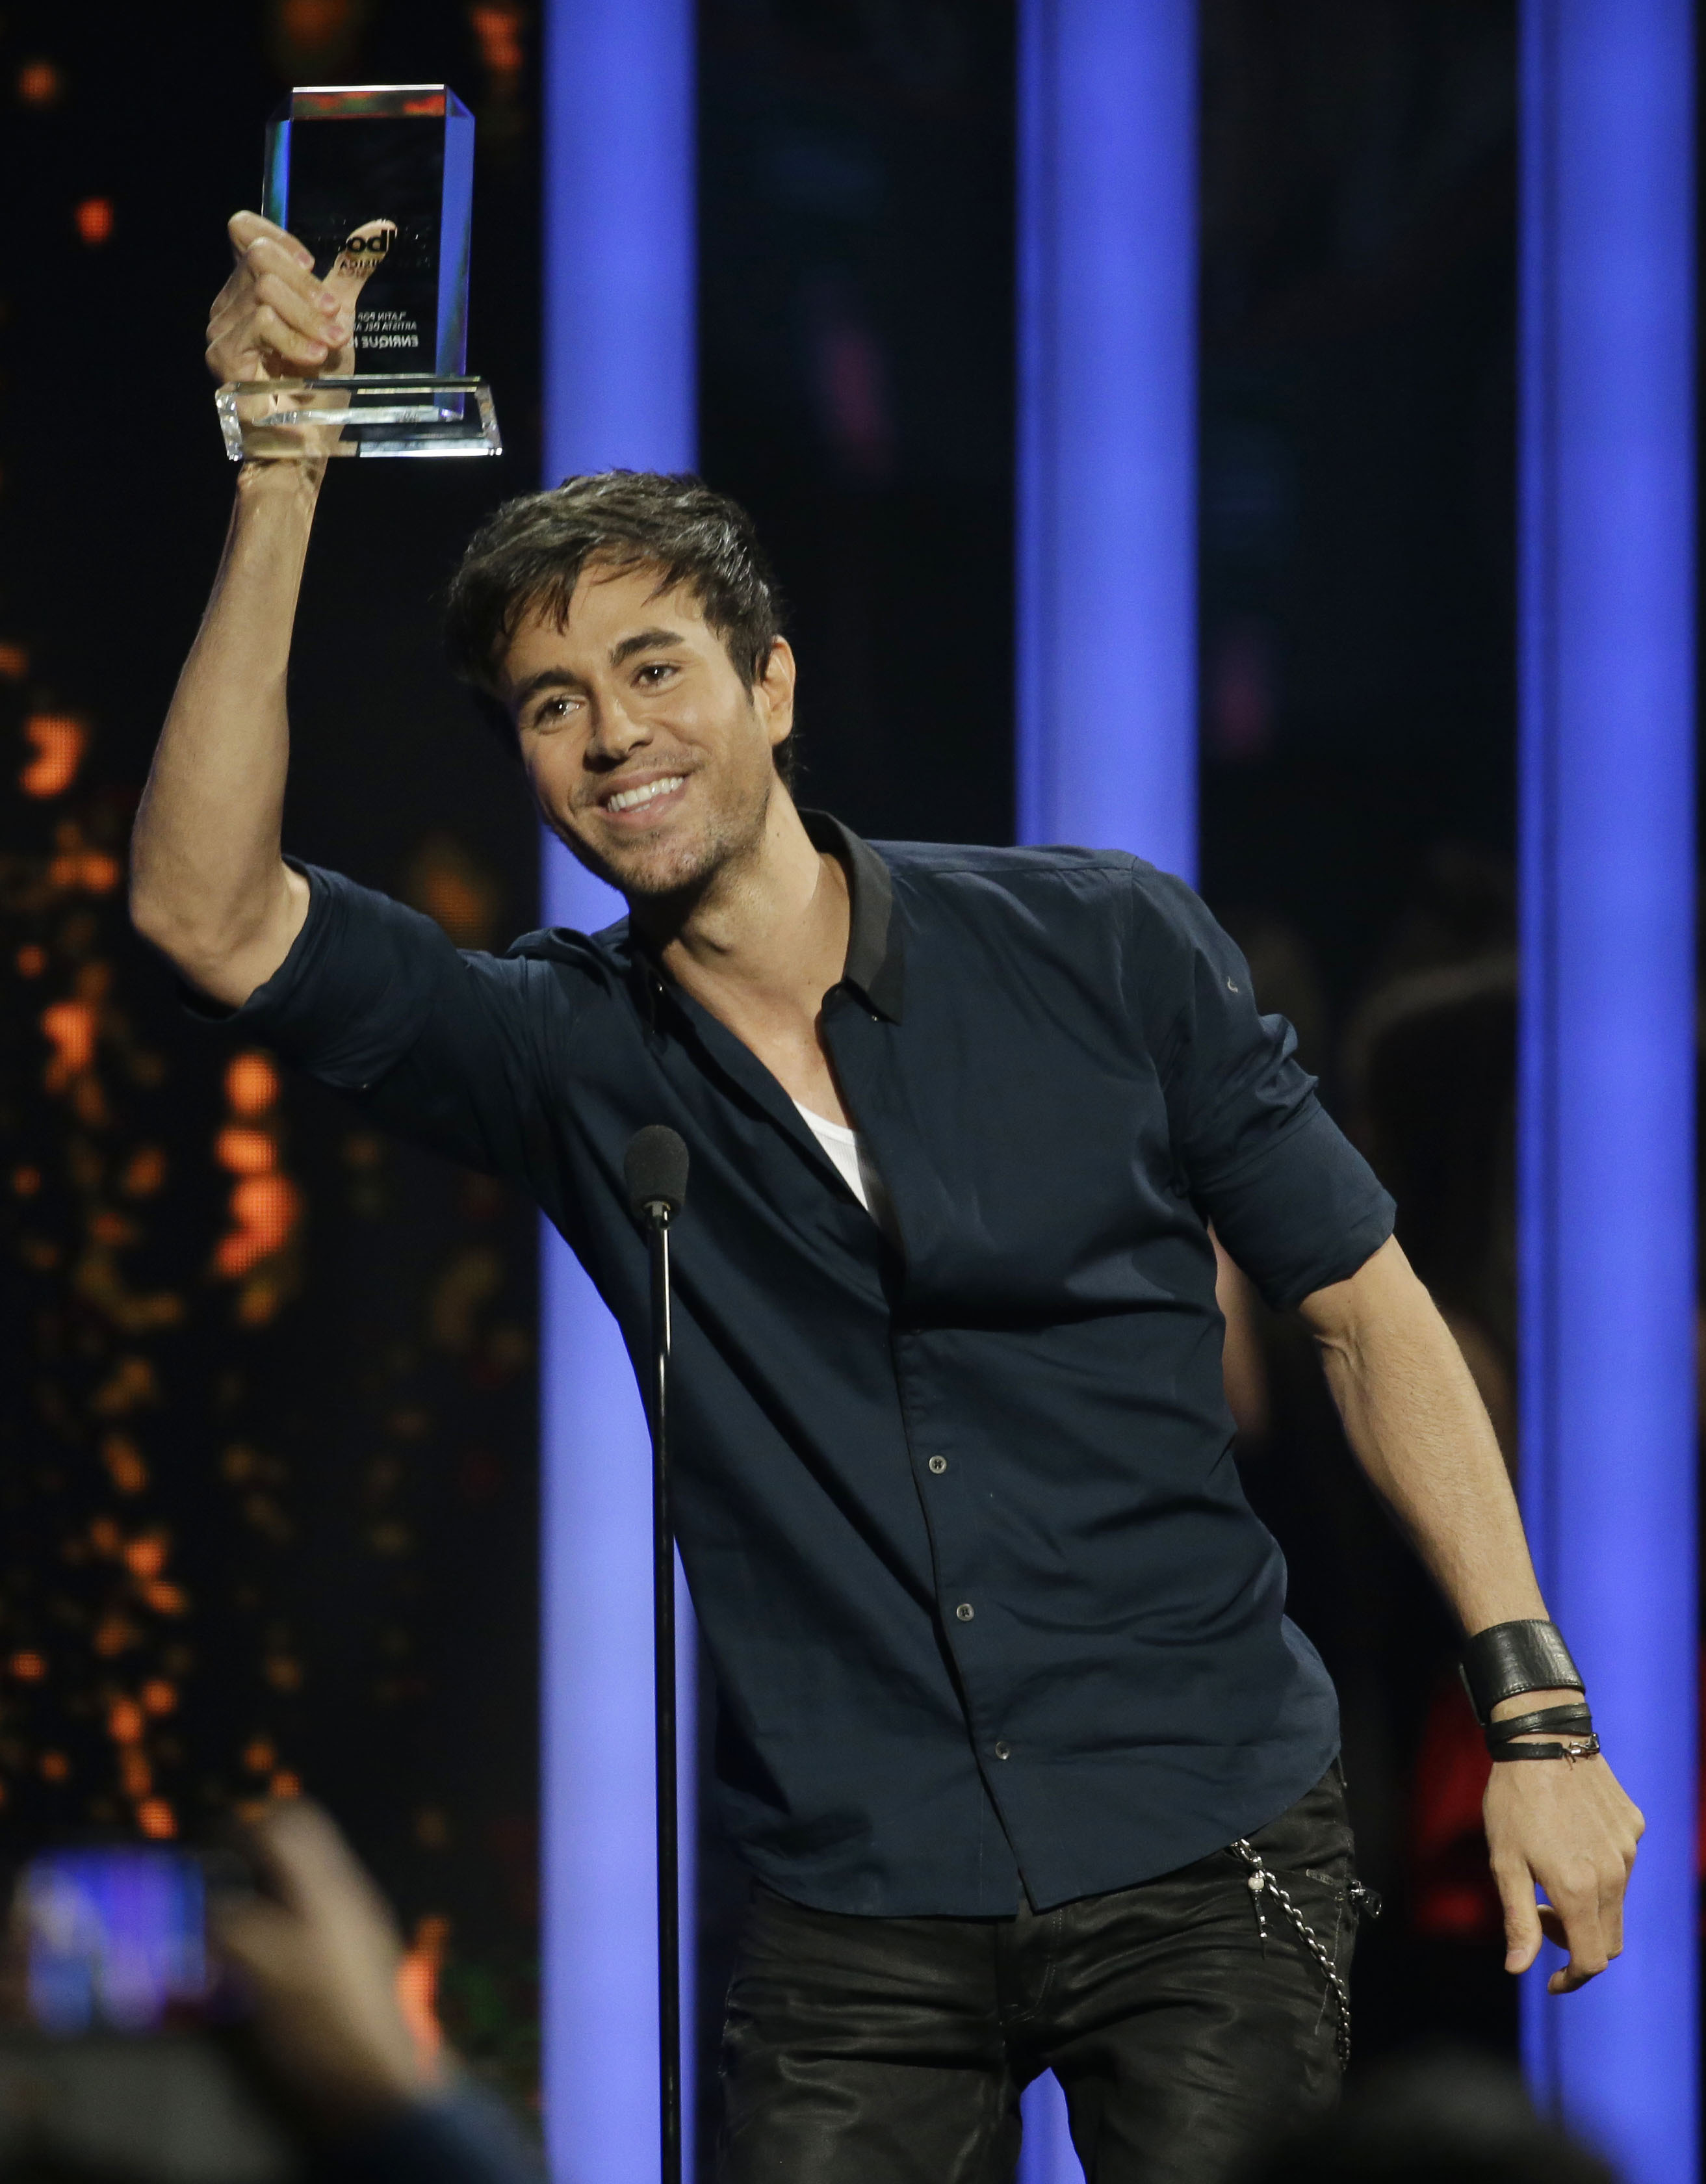 Romeo Santos and Enrique Iglesias sweep Latin music awards